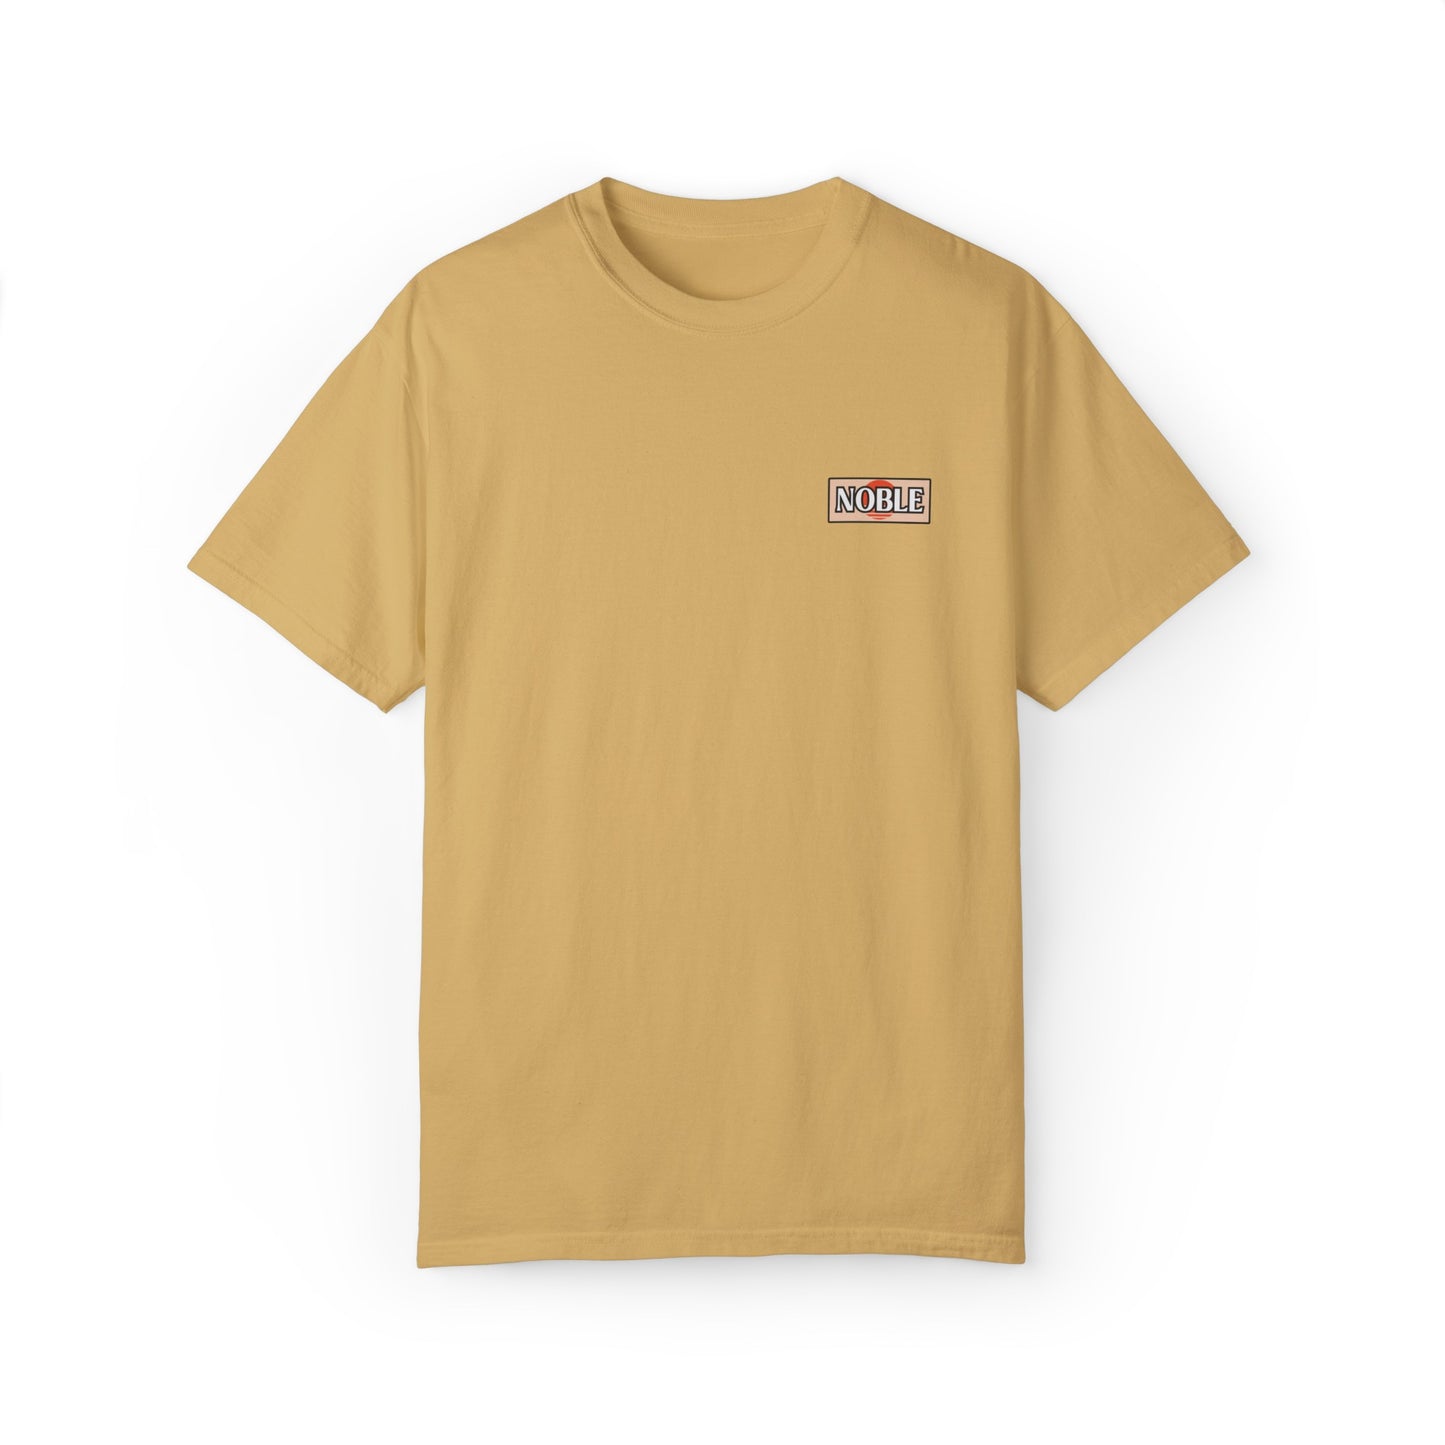 Noble Sunset Badge T-shirt